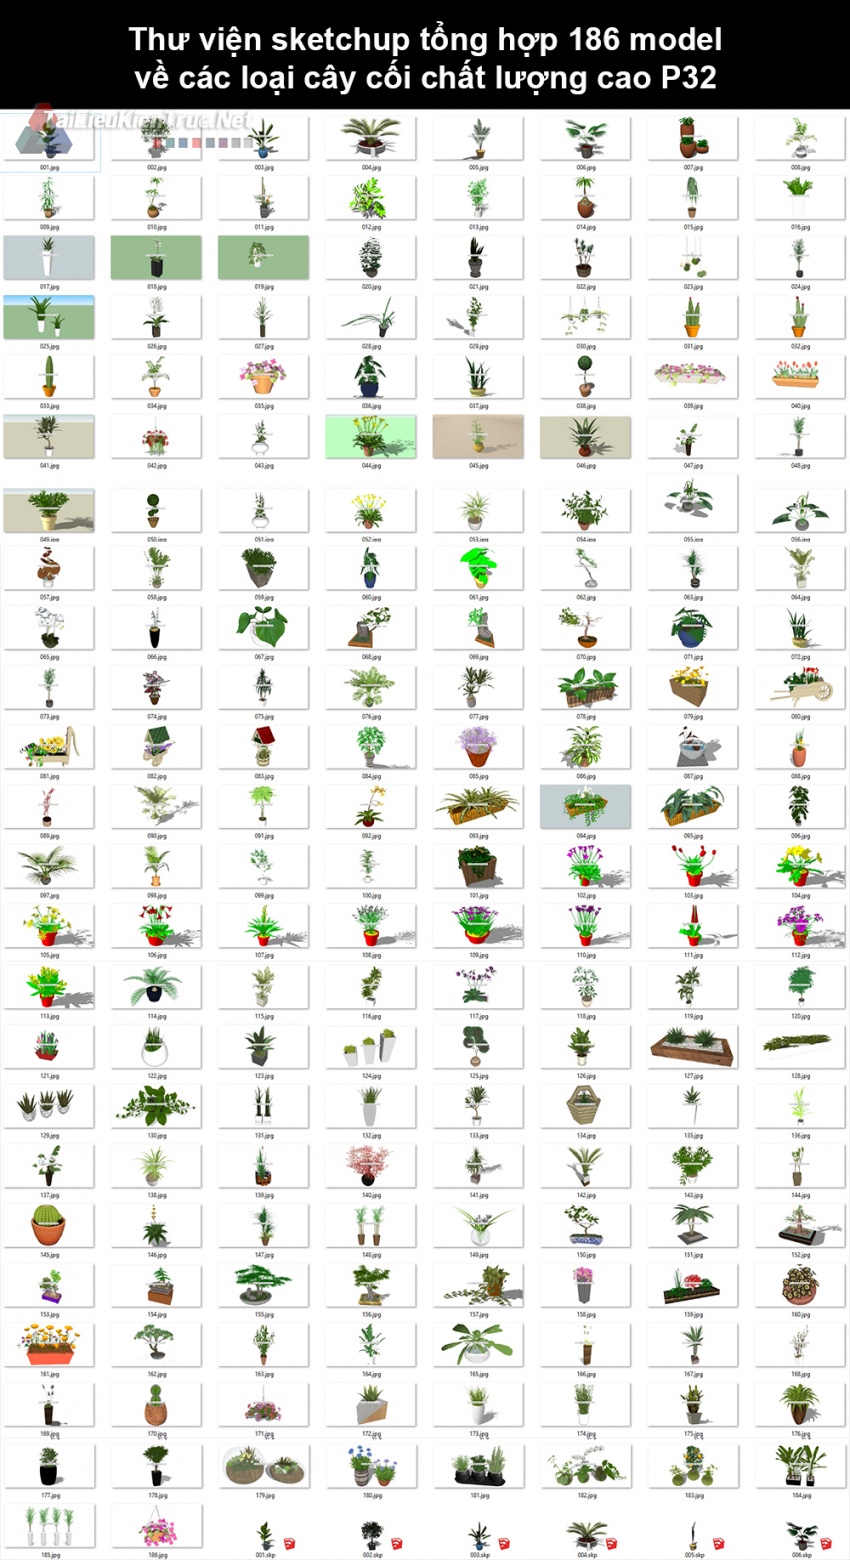 Thư viện Sketchup tổng hợp 186 Model về các loại cây cối chất lượng cao P32